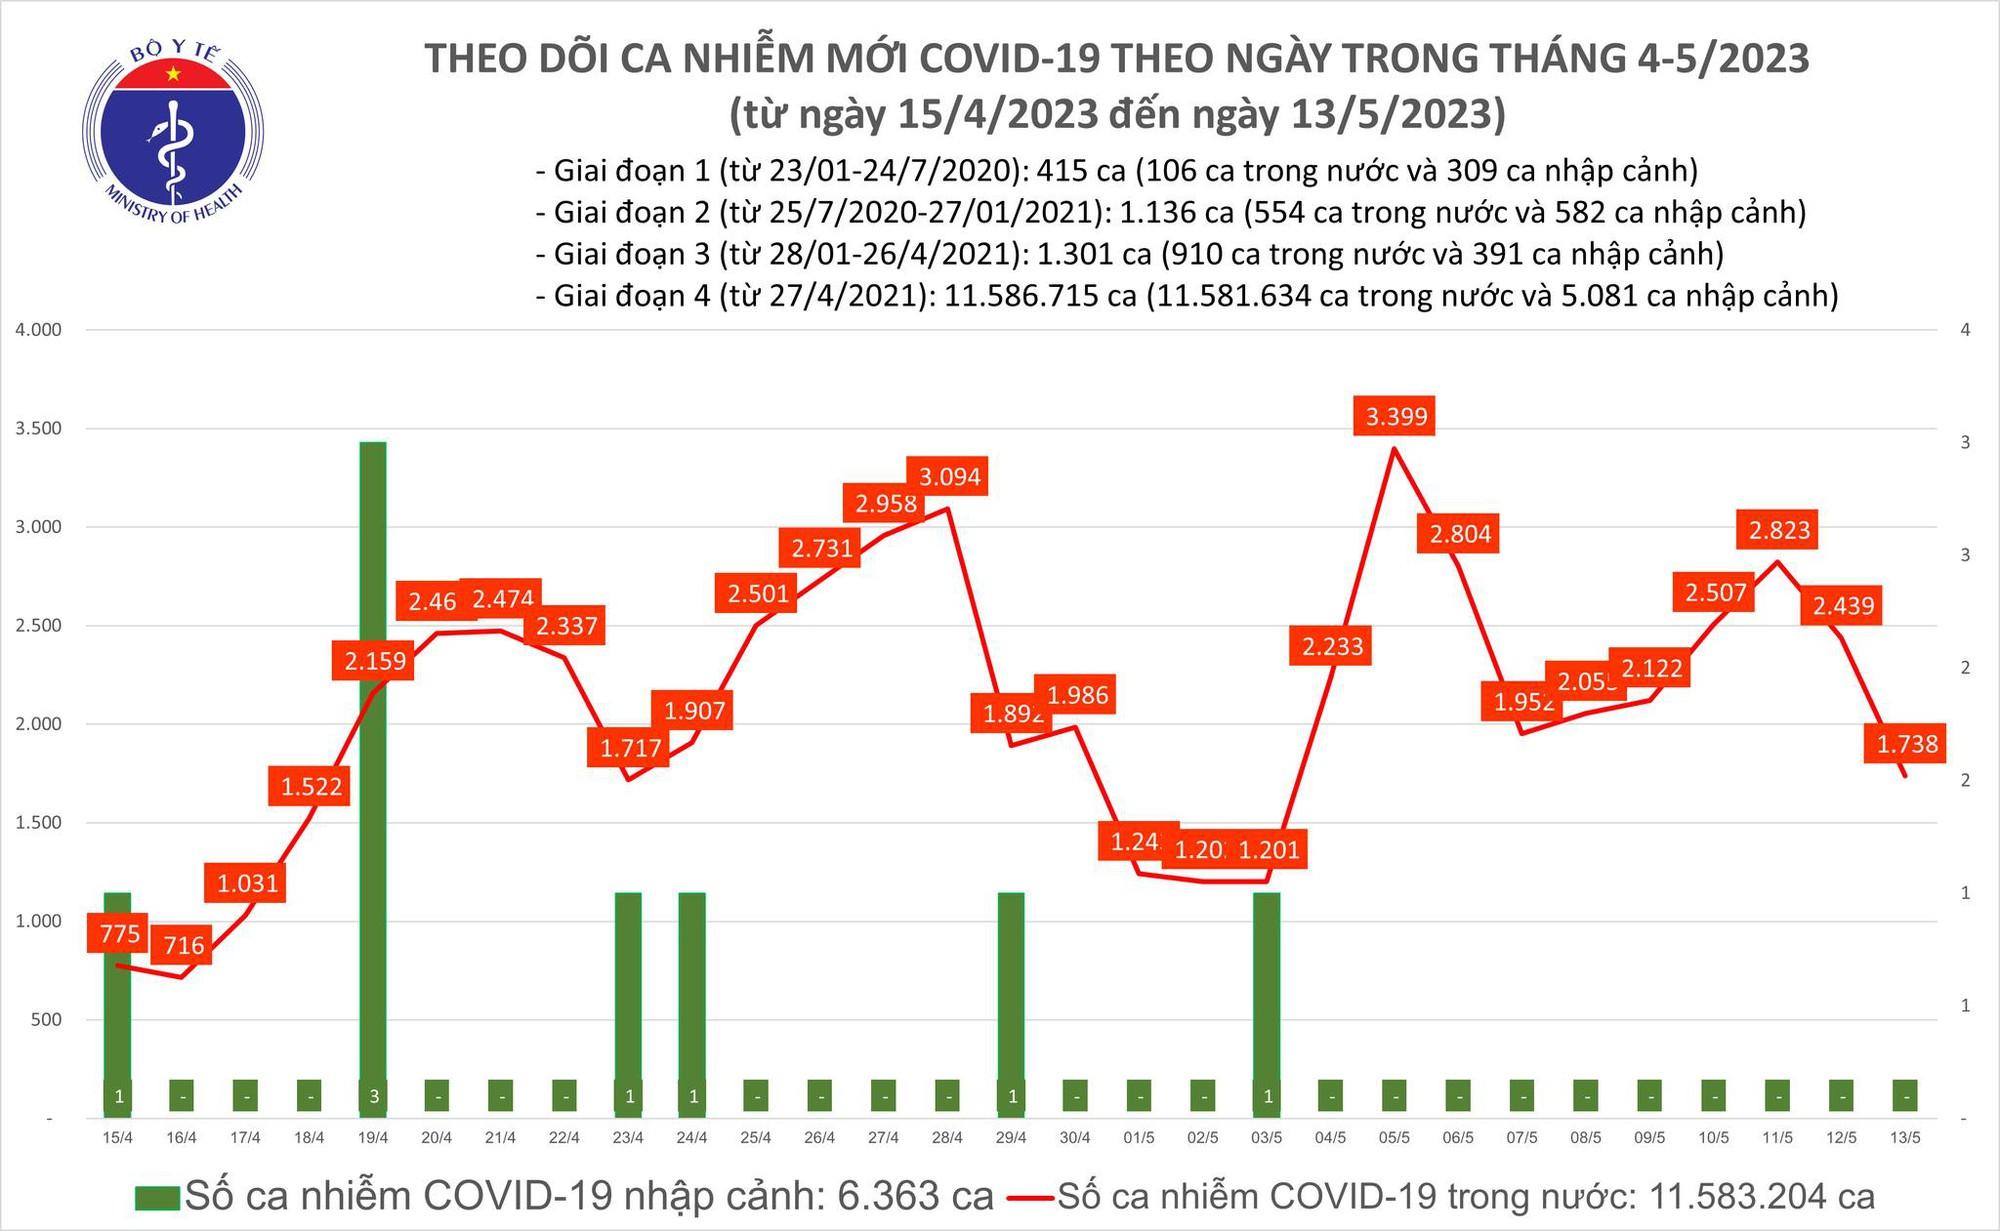 Ngày 13/5: Có 1.738 ca COVID-19 mới trong 24h qua - Ảnh 1.